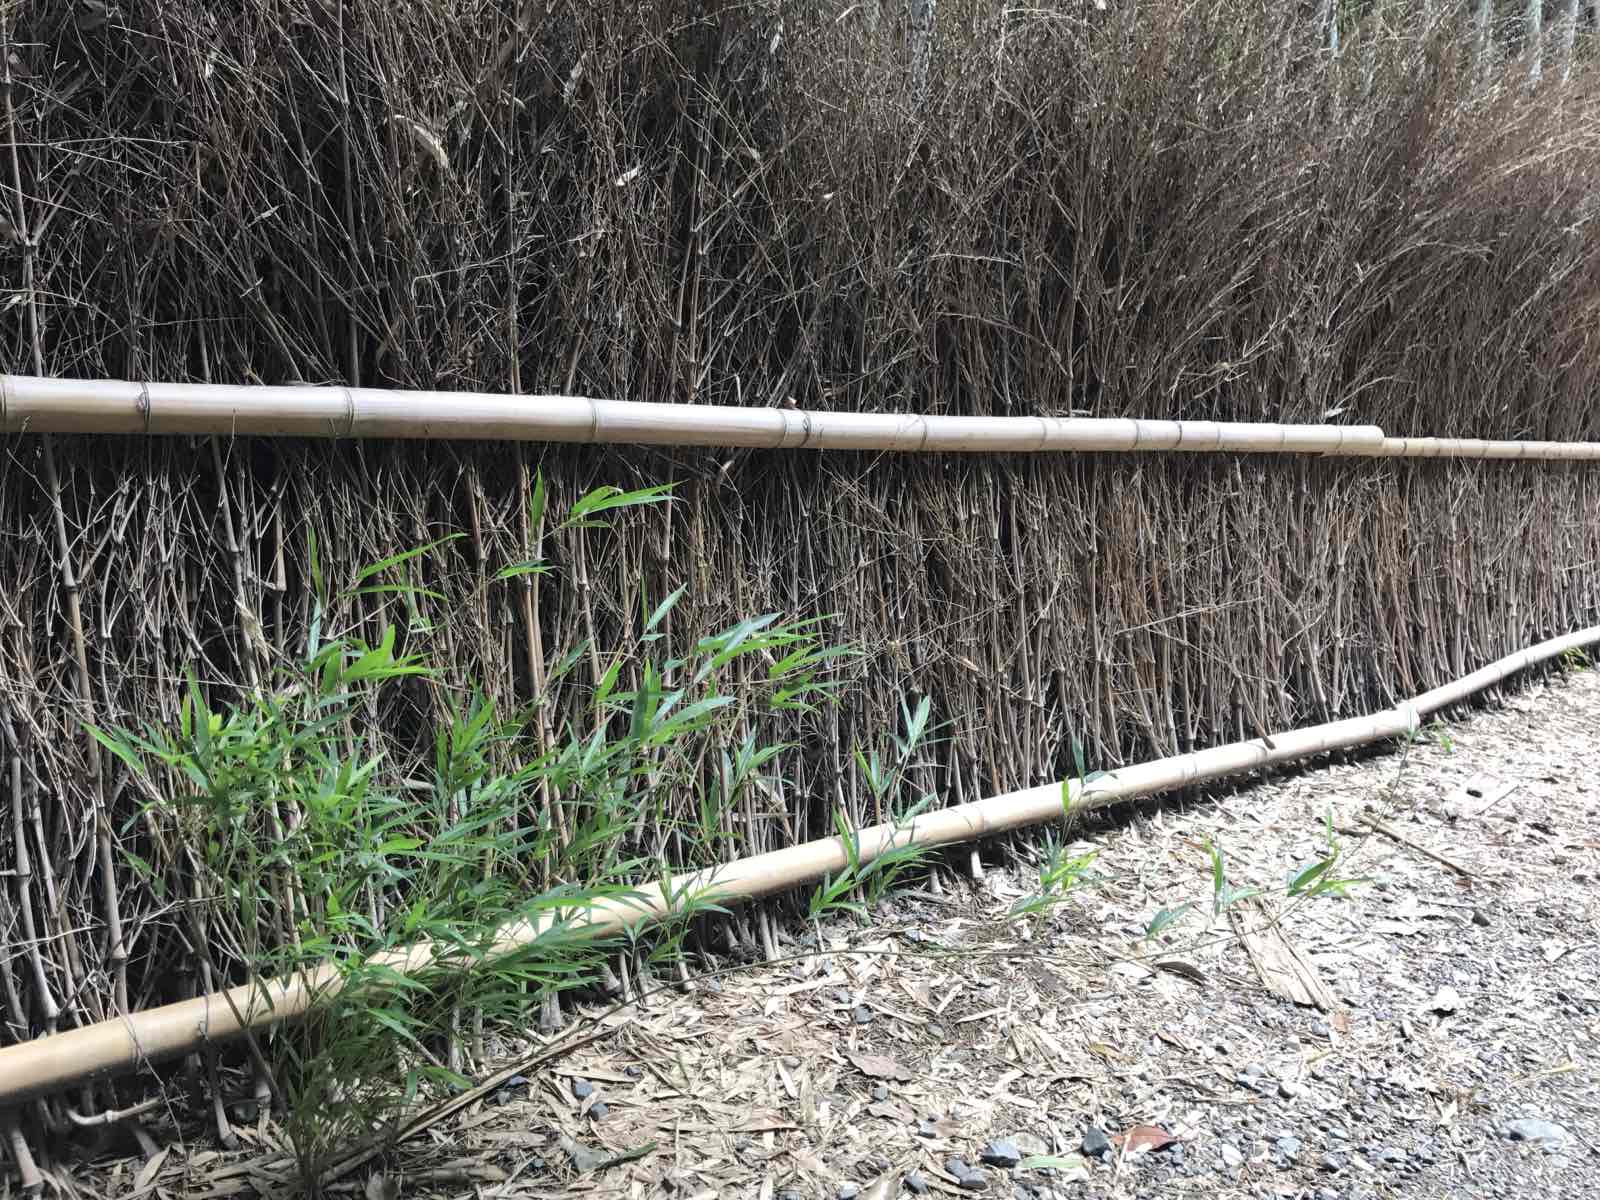 就是一条长度100米左右的竹林道路wenhao这里其实到处都有竹子的。